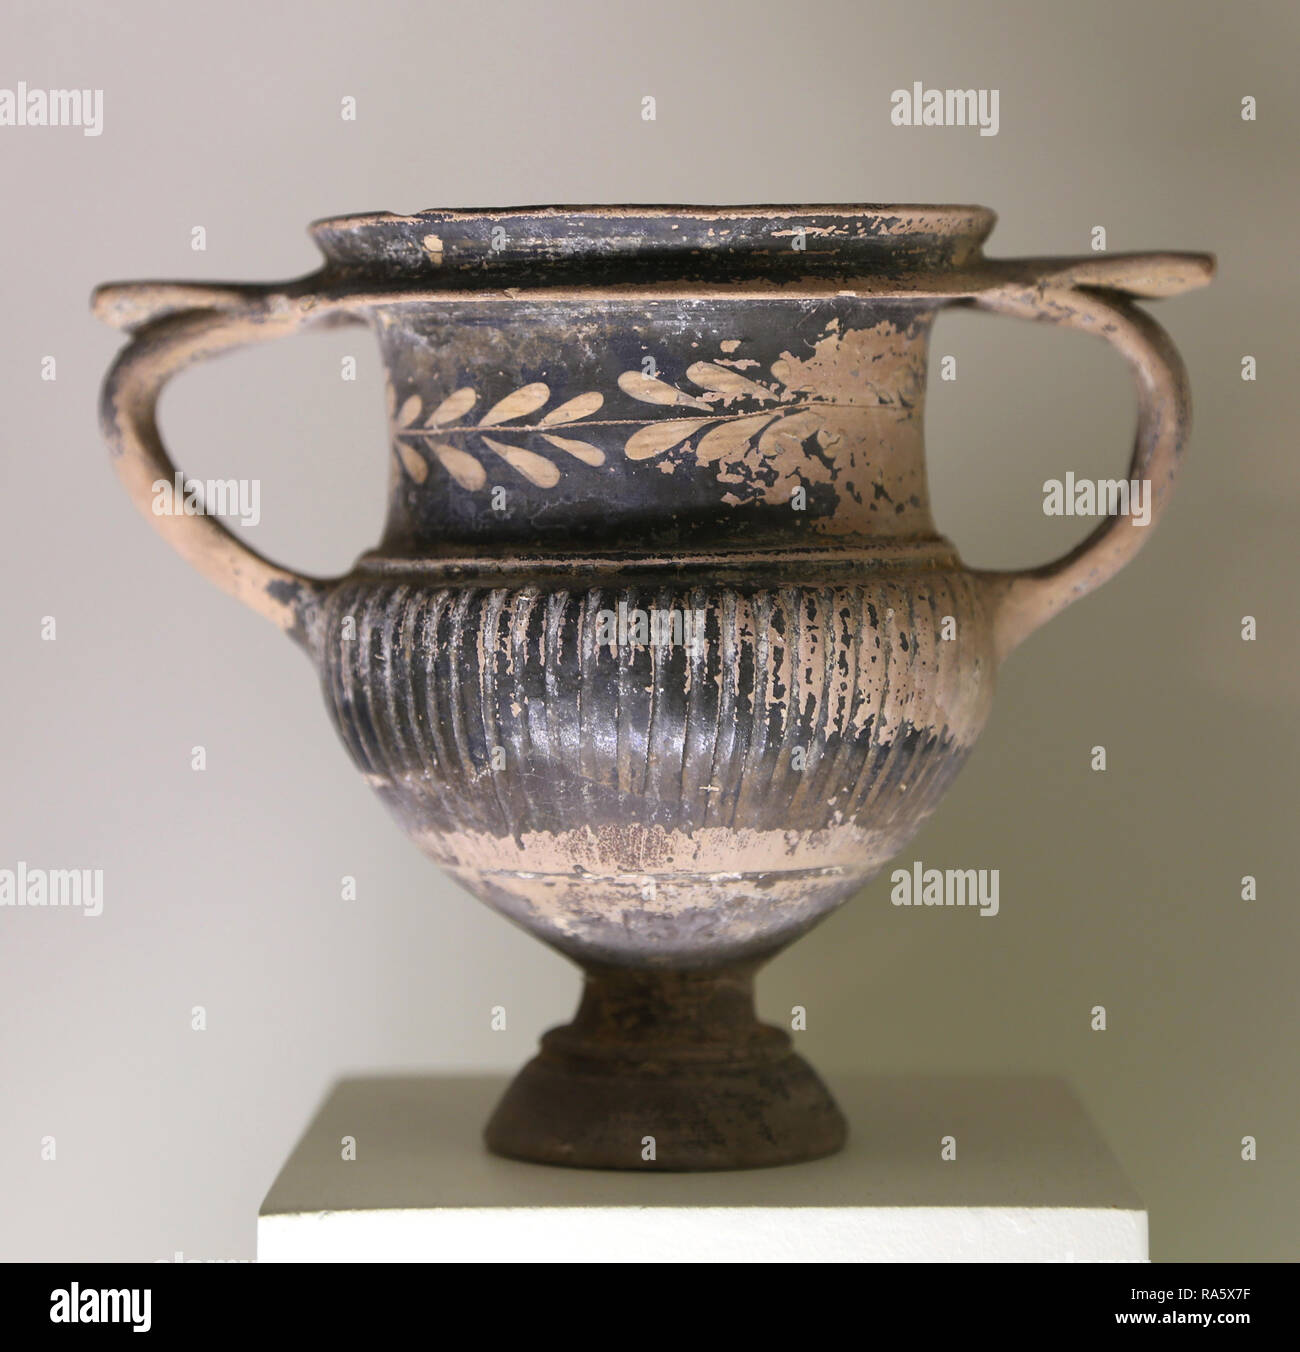 Kantharos noir-brillant, roue-made pottery (3e siècle avant J.-C.) Roses atelier. La culture grecque. Cabrera de Mar, Catalogne, Espagne. Banque D'Images